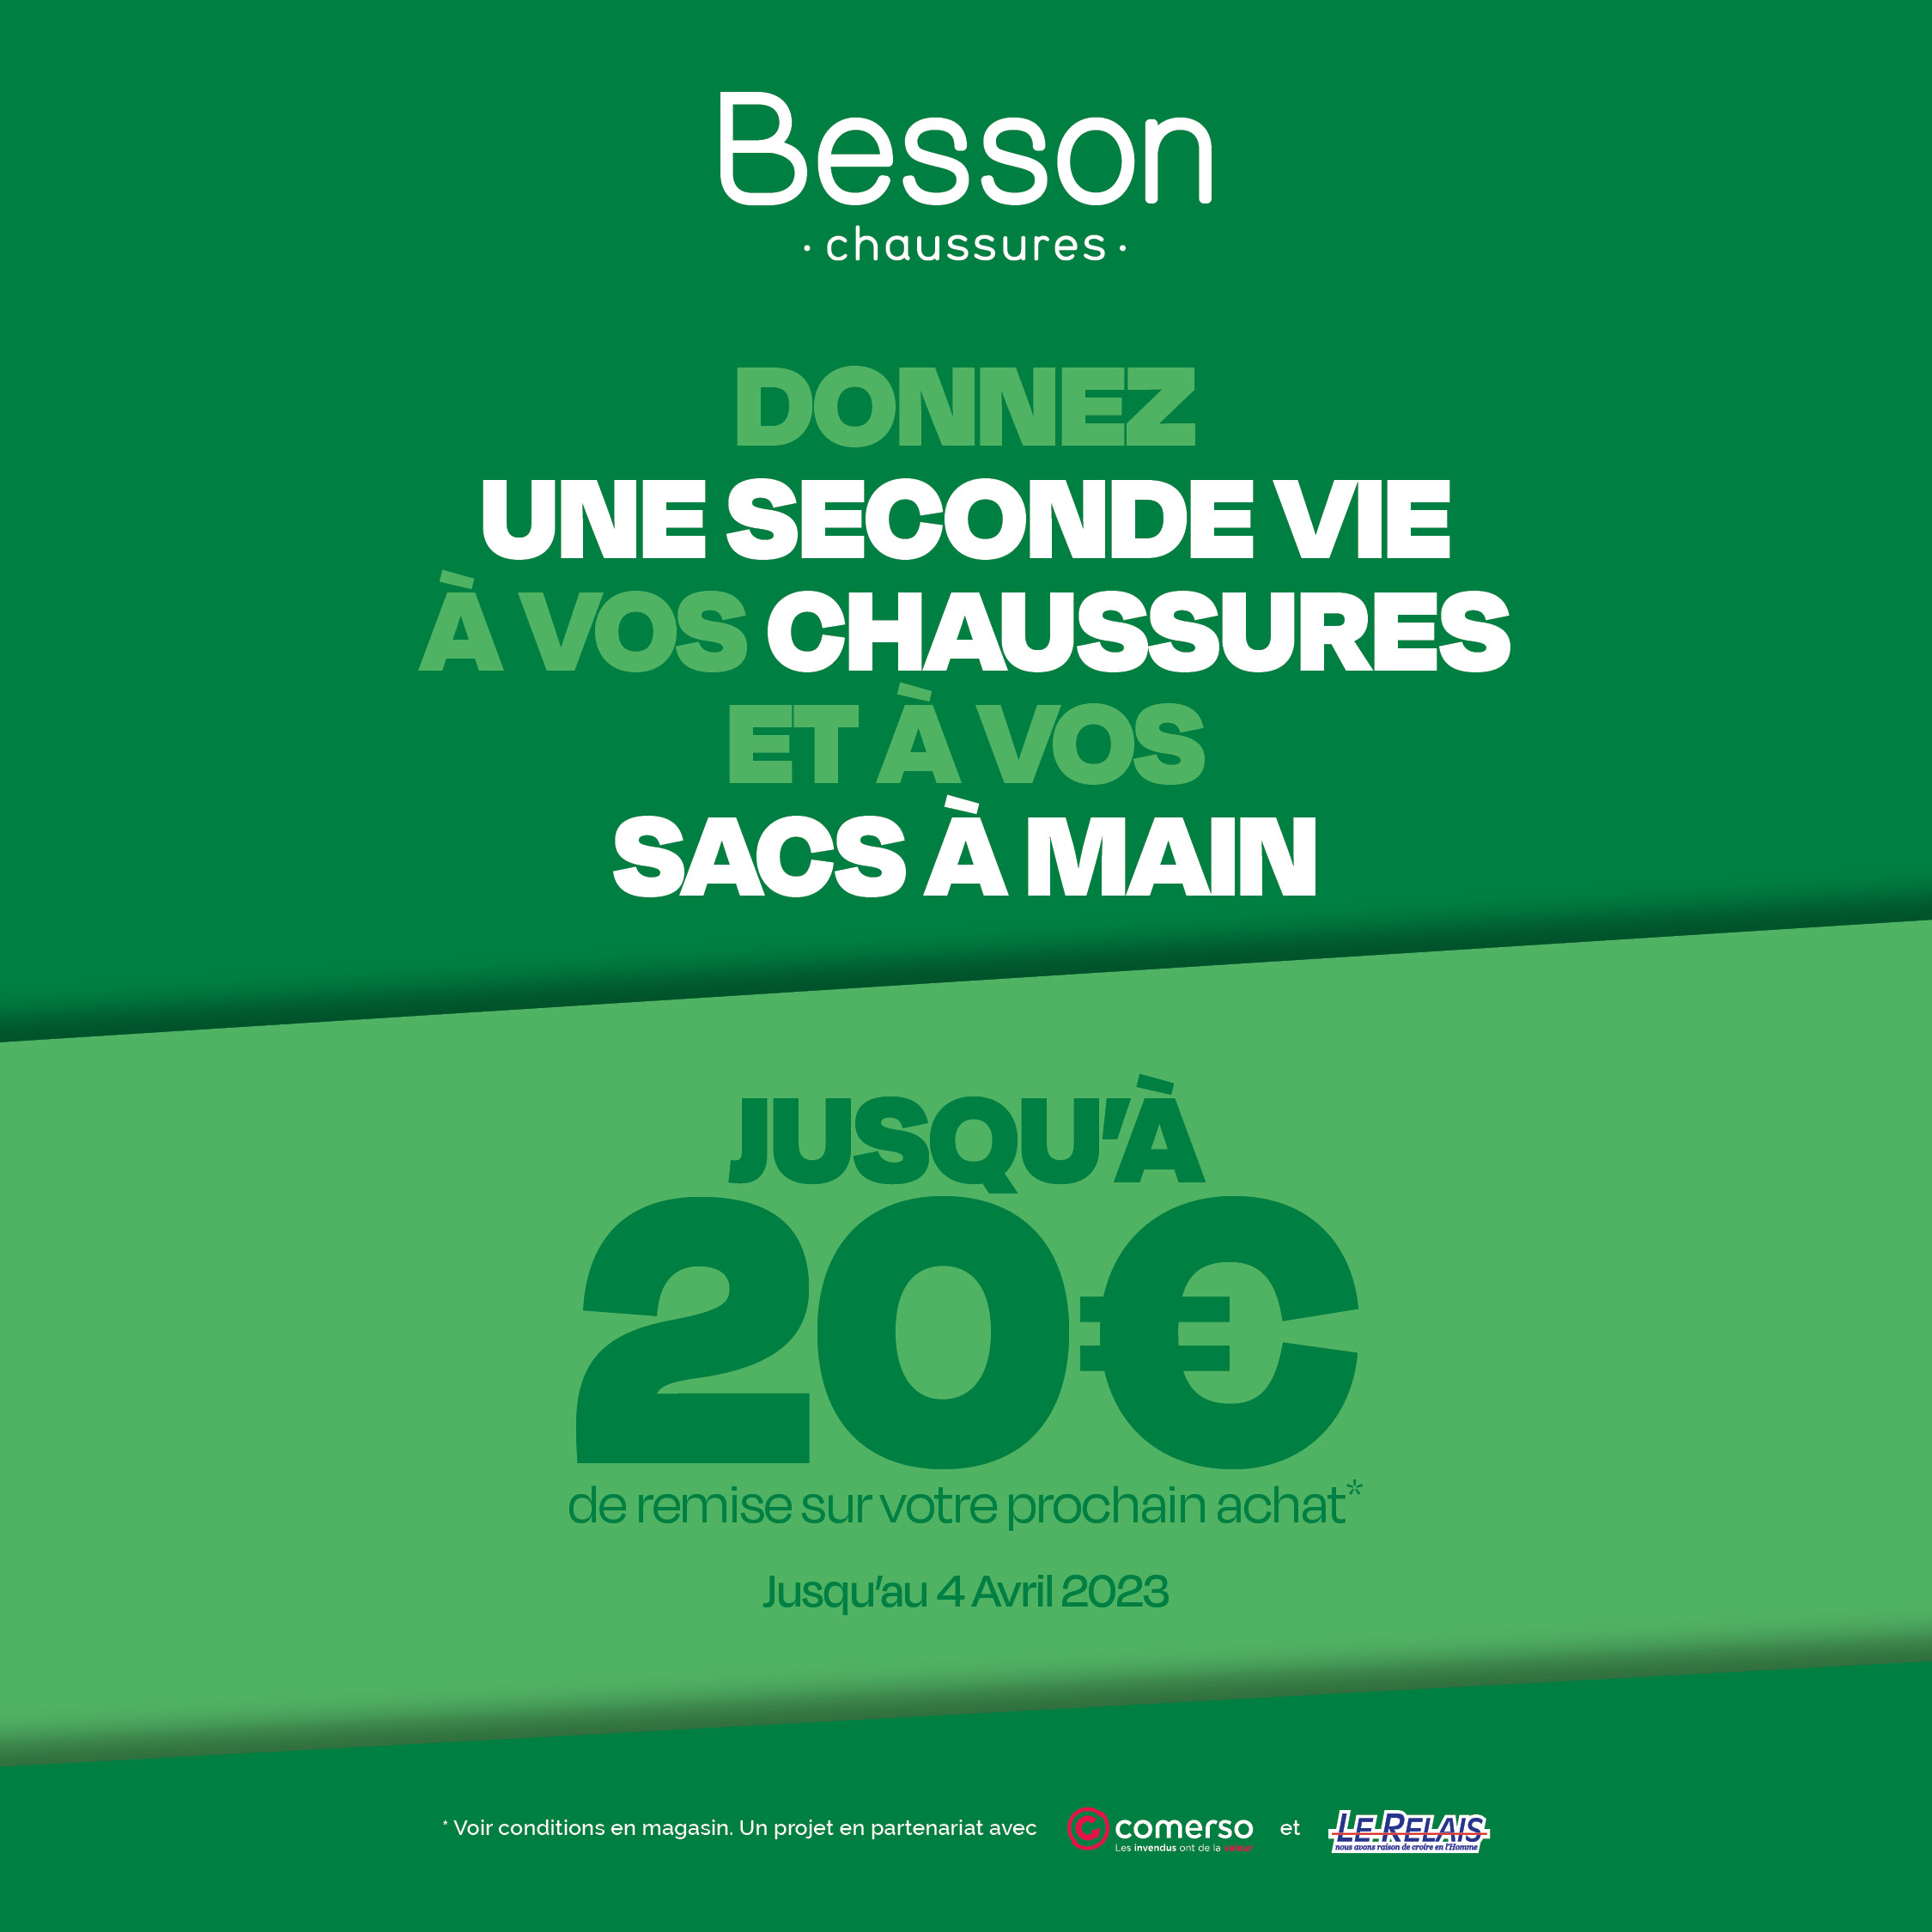 Be Green - Saint Parres - - besson reseaux sociaux 1080x1080 1 - 1